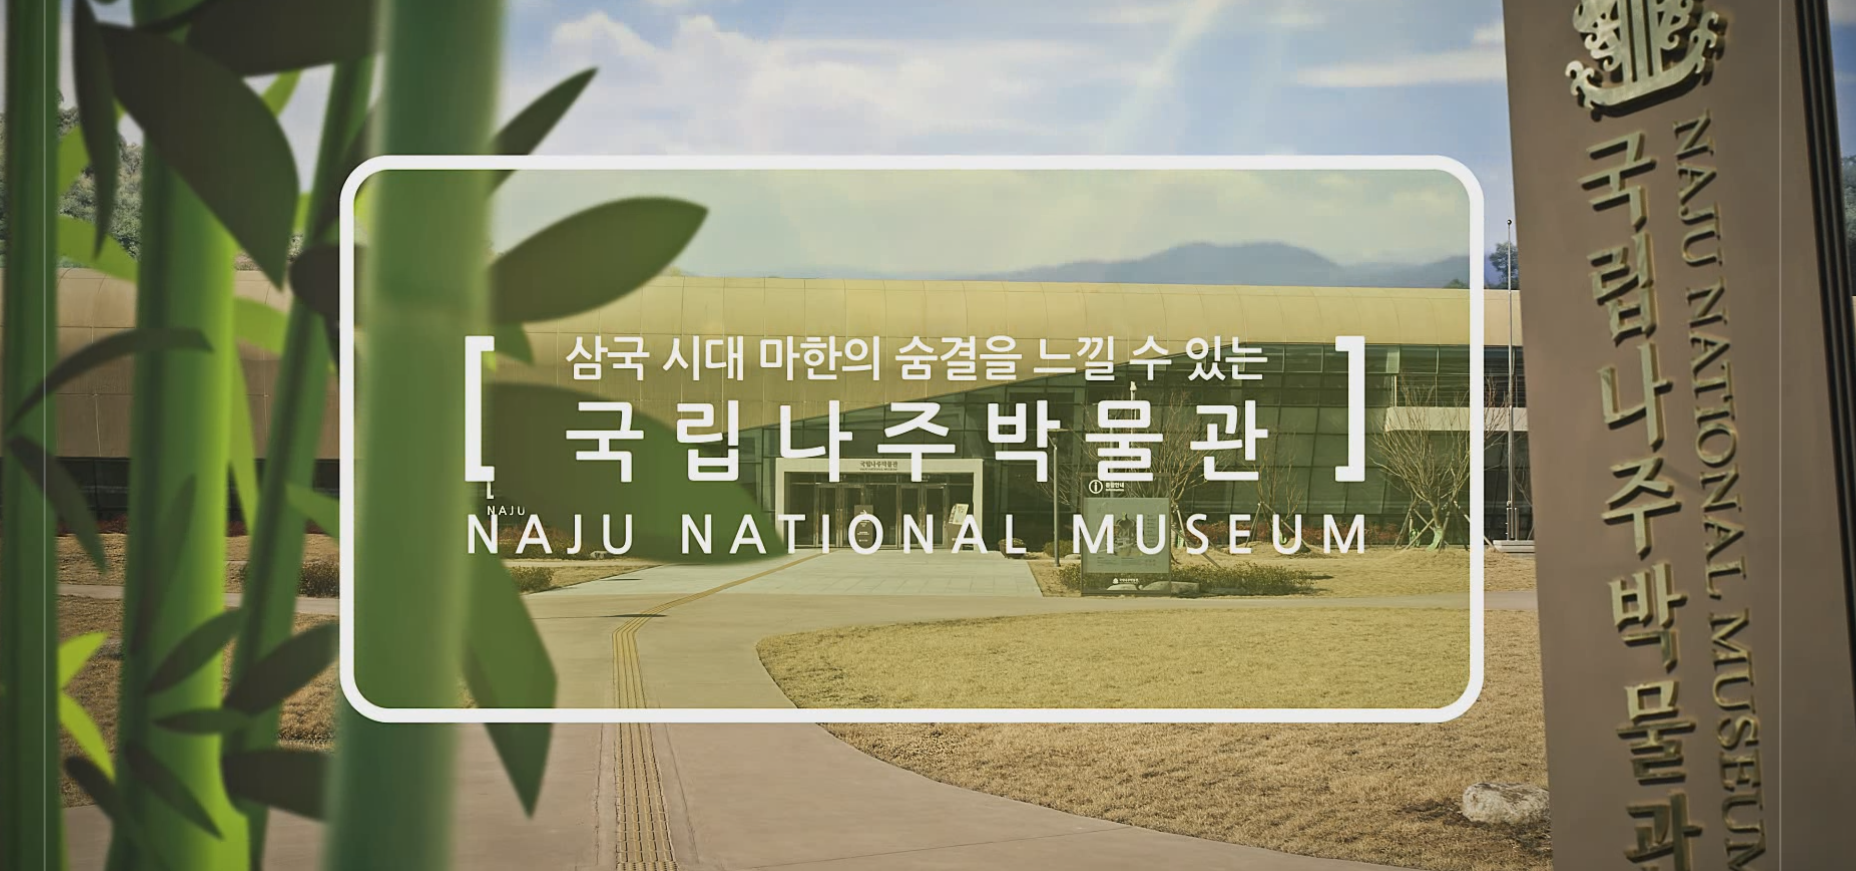 광주MBC 문화수도캠페인 삼국시대 마한의 숨결을 느낄 수 있는 박물관이 나주에 문을 열었습니다. 이미지